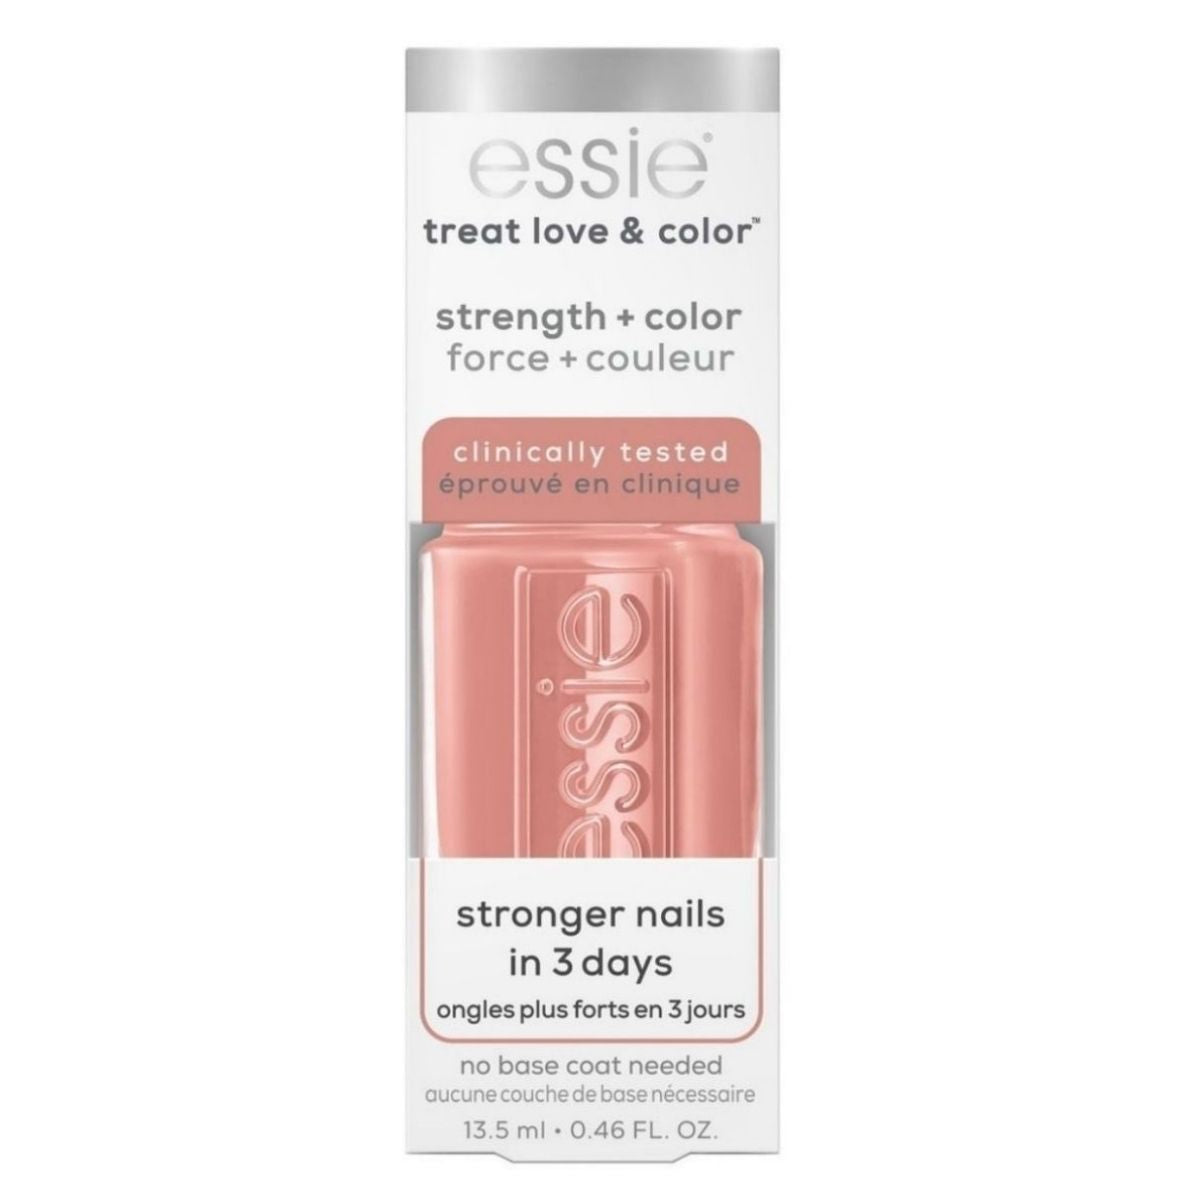 Essie Treat Love Colour Nail Polish